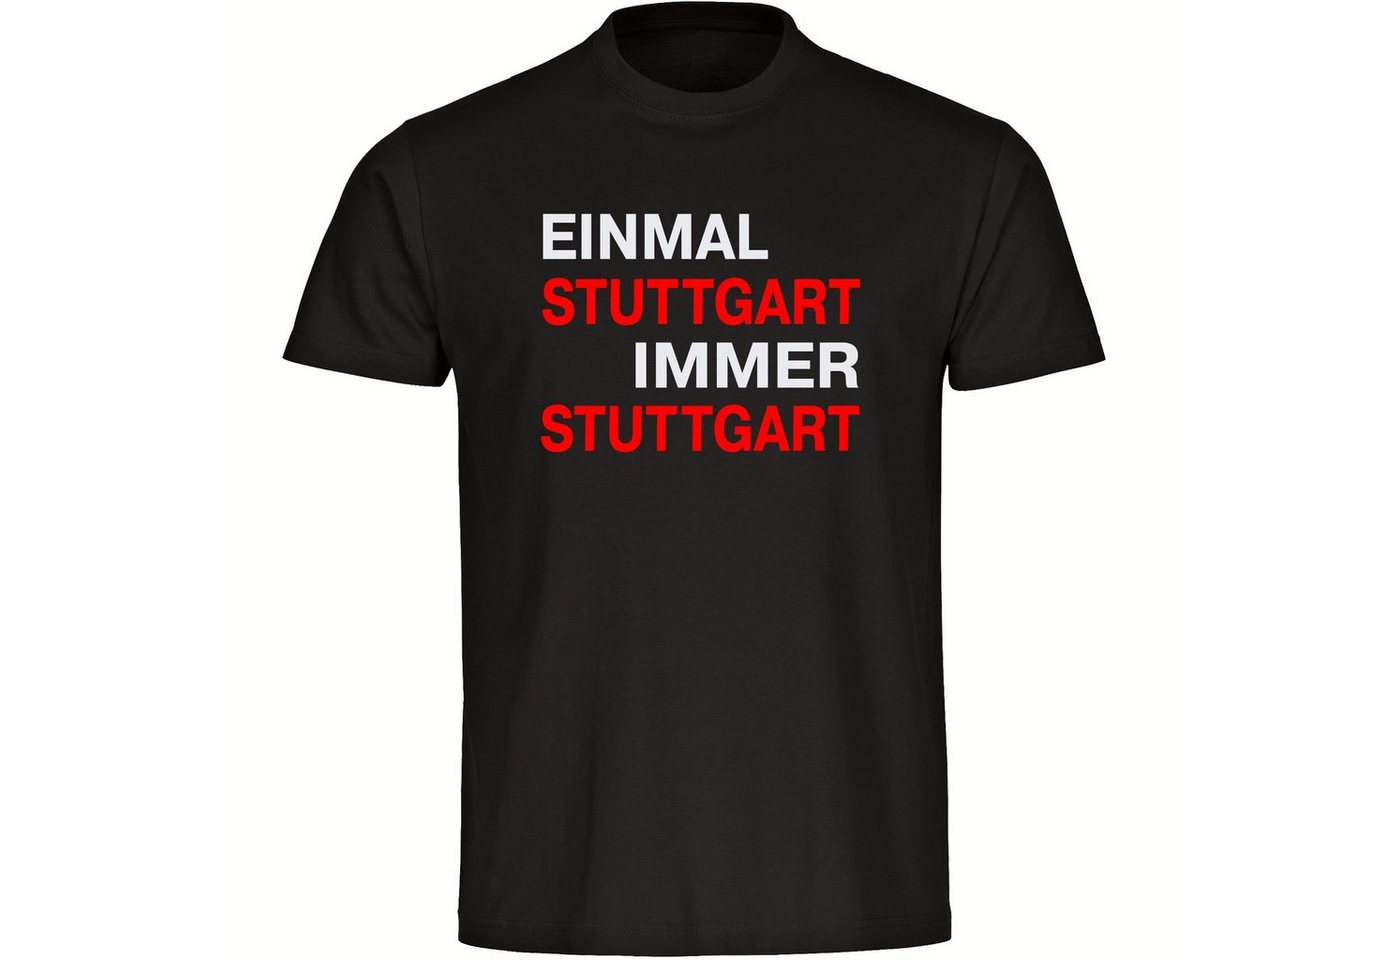 multifanshop T-Shirt Herren Stuttgart - Einmal Immer - Männer von multifanshop